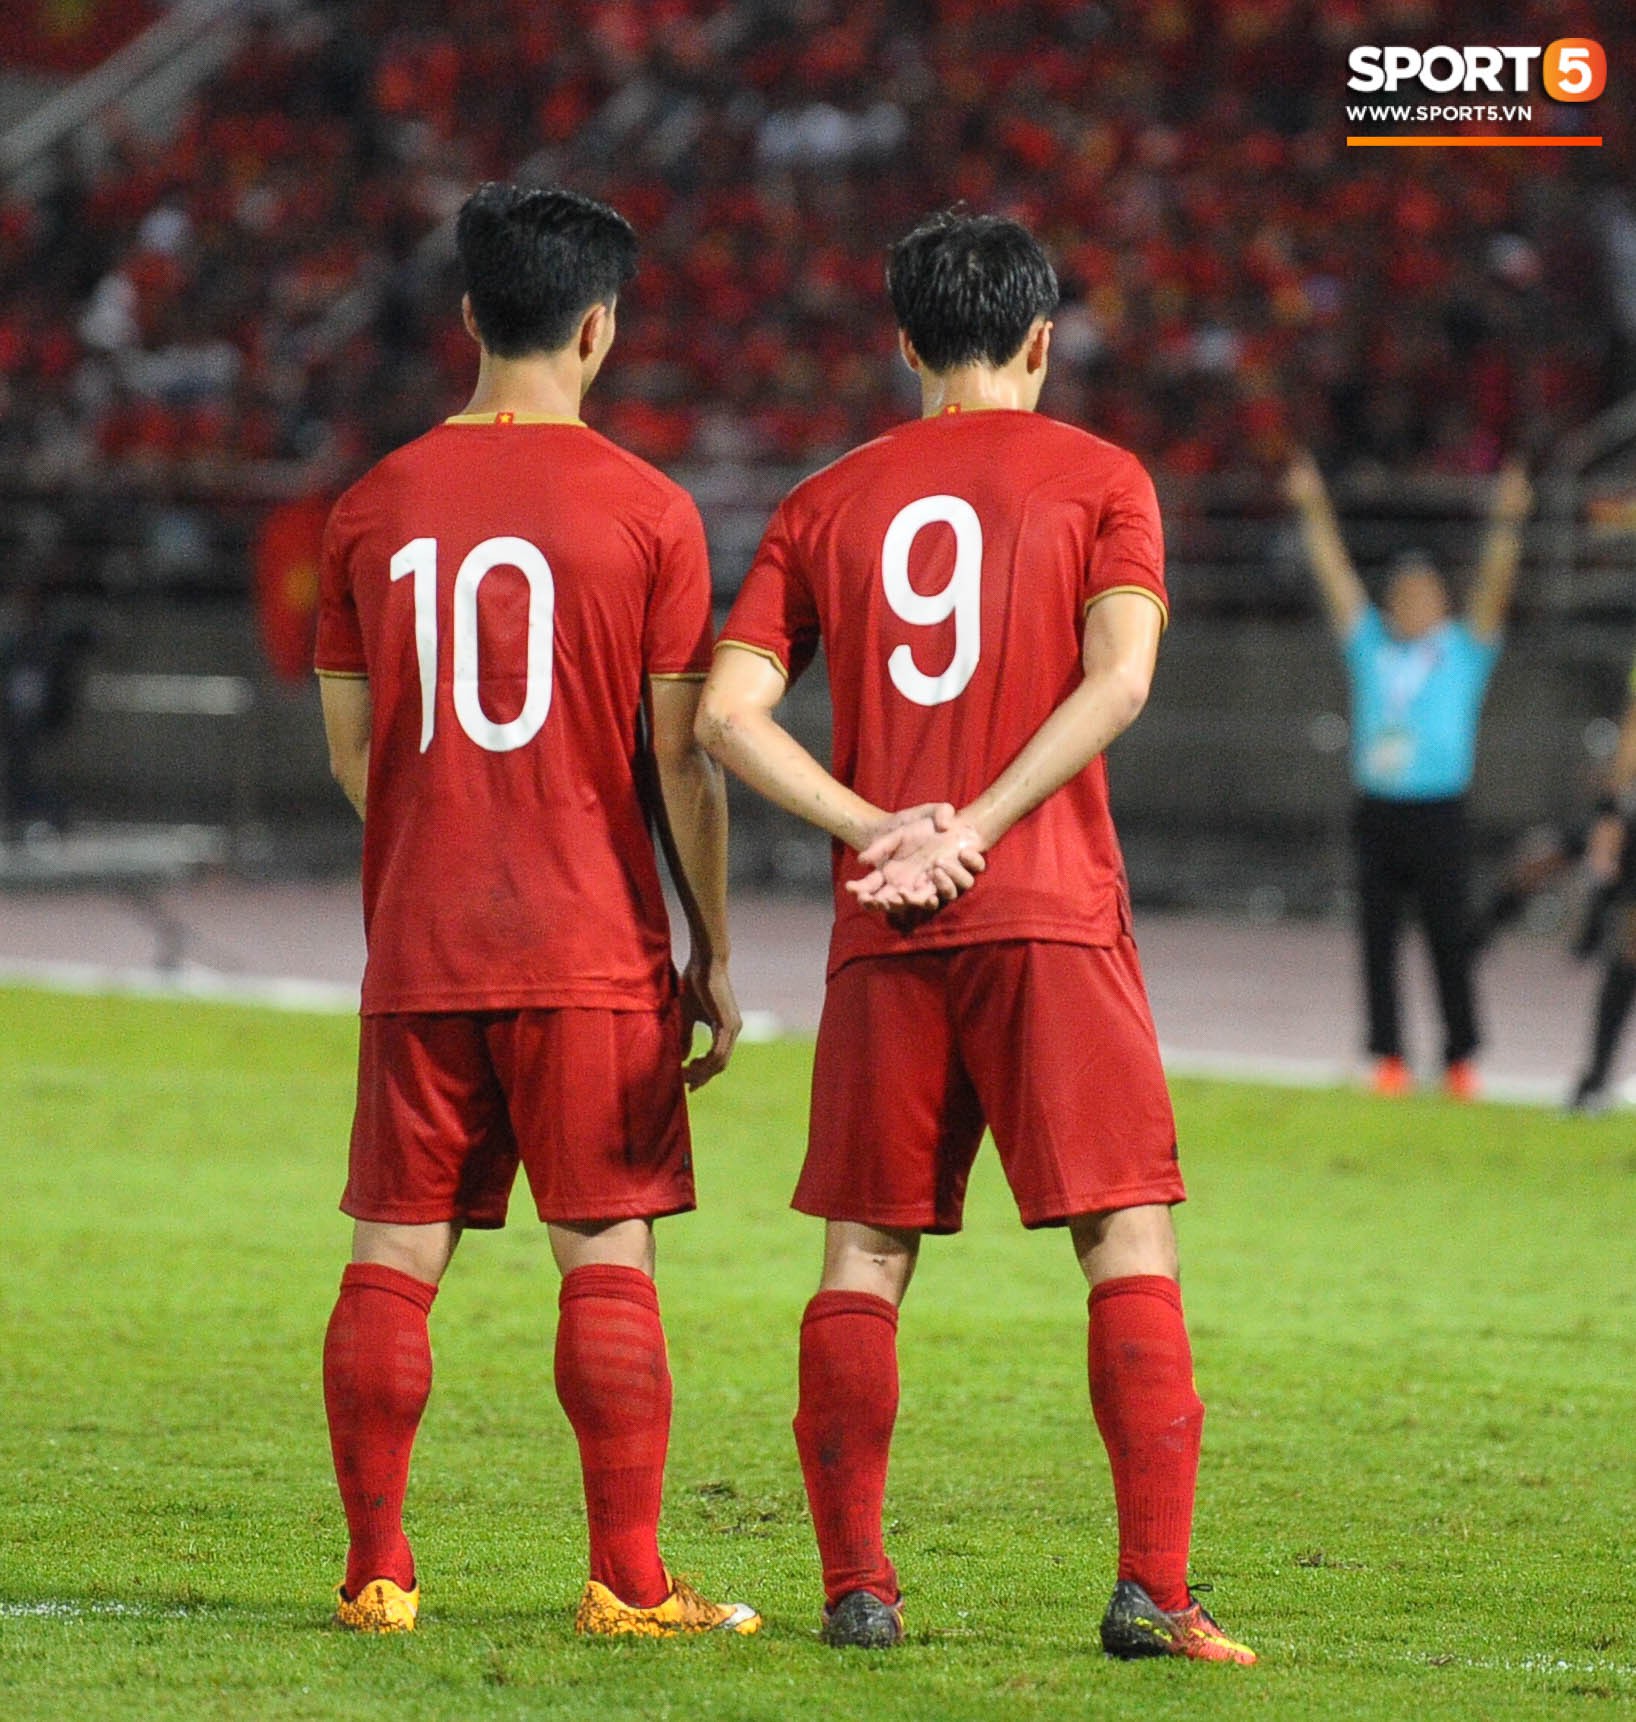 Cầu thủ Việt Nam vô danh trên sân và đây là lý do nghe vô lý nhưng lại rất thuyết phục - Ảnh 2.